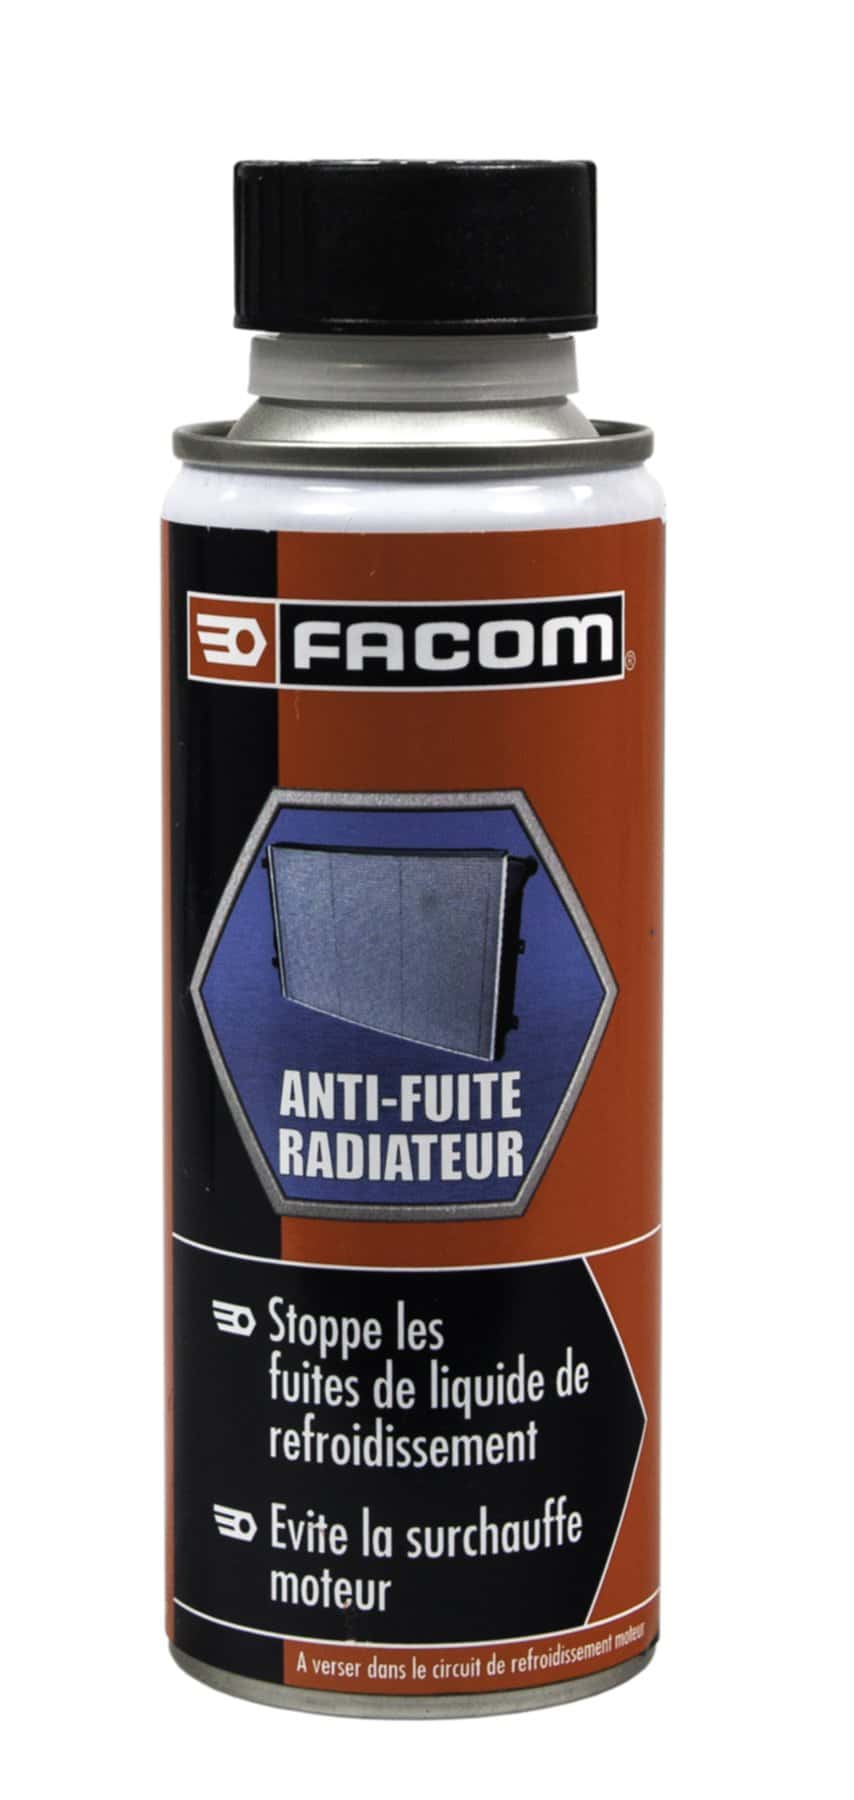 Anti-fuites radiateur 250 mL - FACOM - Mr.Bricolage